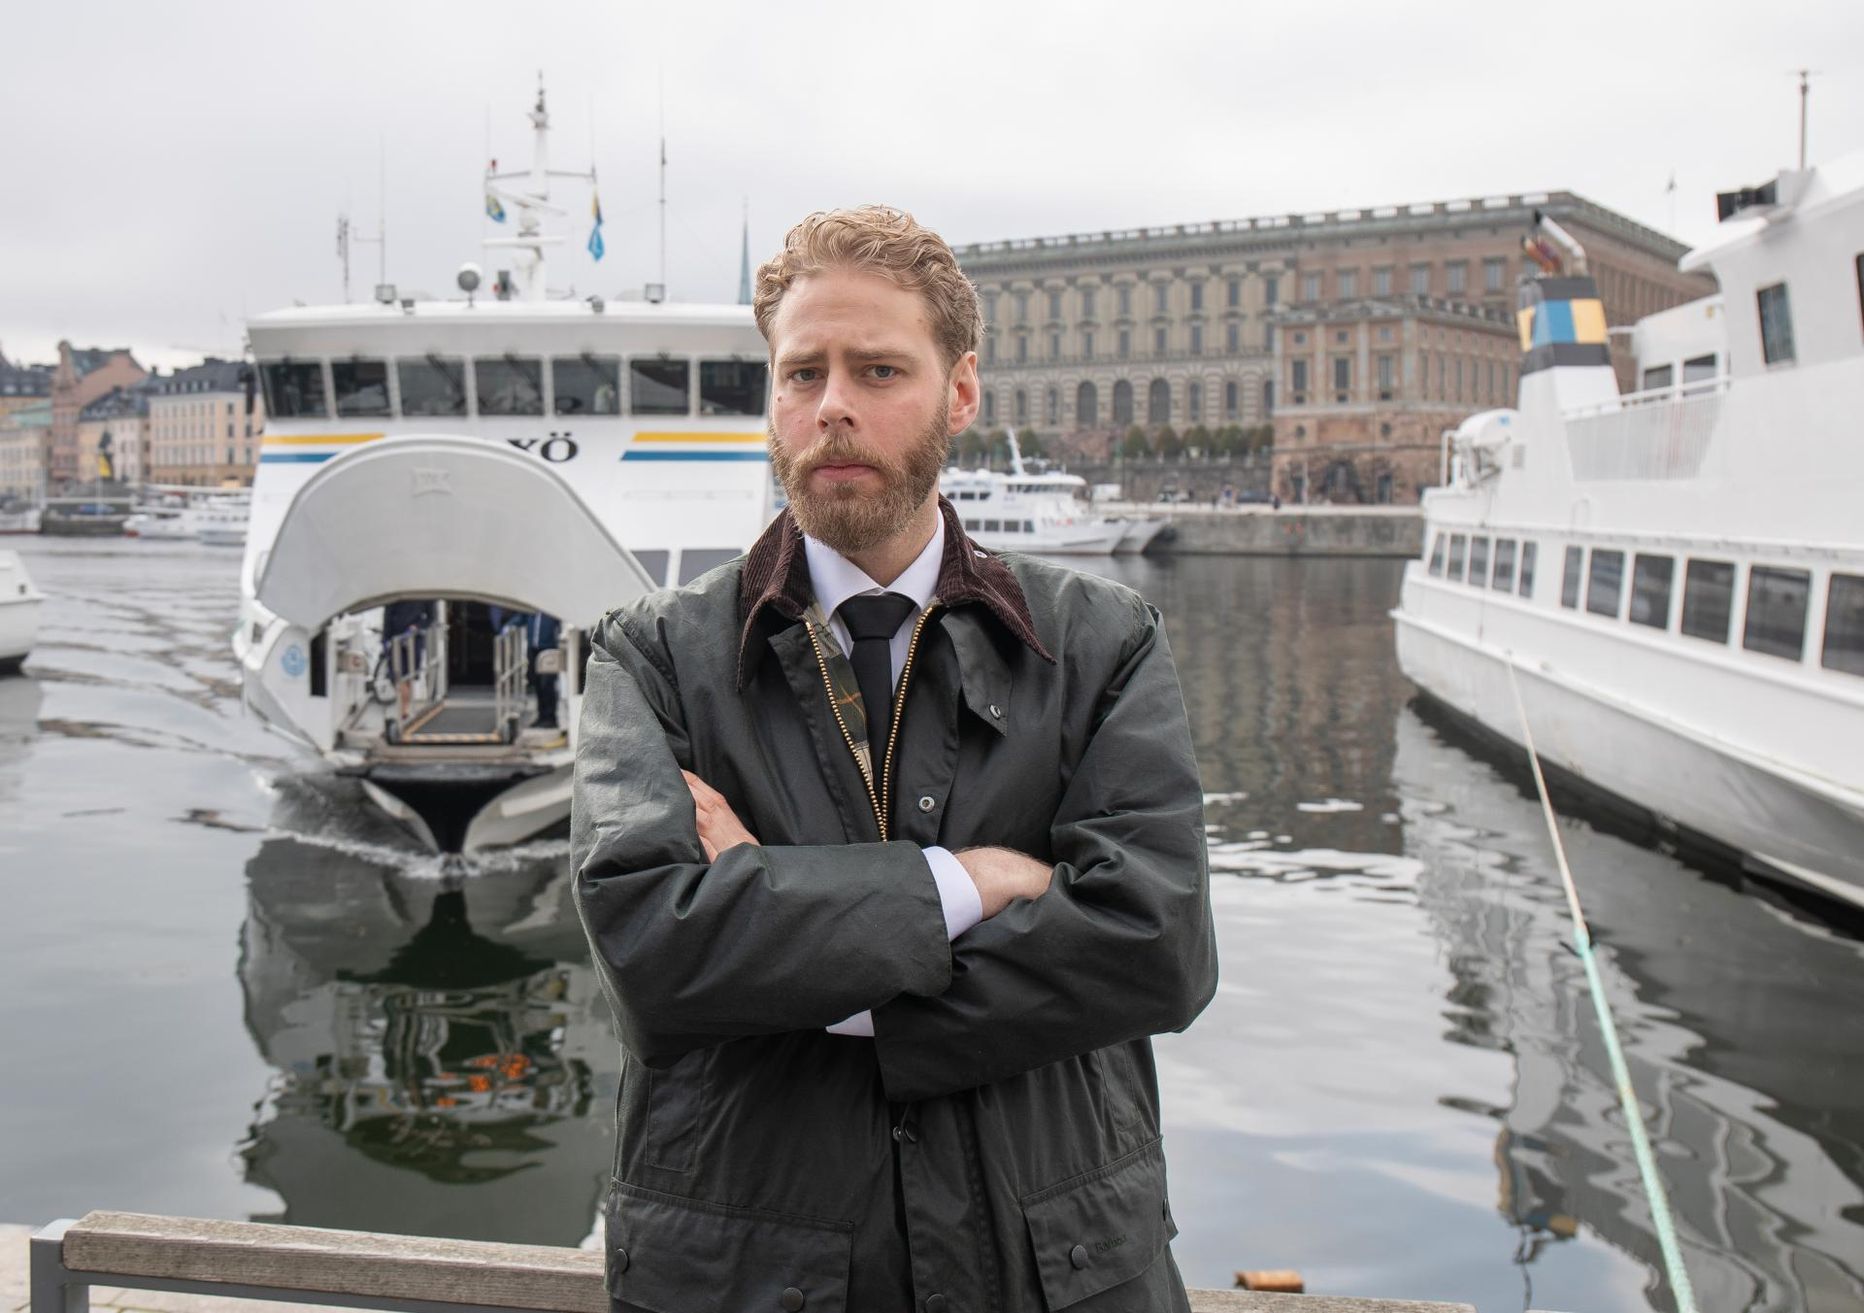 Режиссер фильма "Эстония - находка, которая изменит все" Хендрик Эвертссон в день премьеры фильма в Стокгольме.